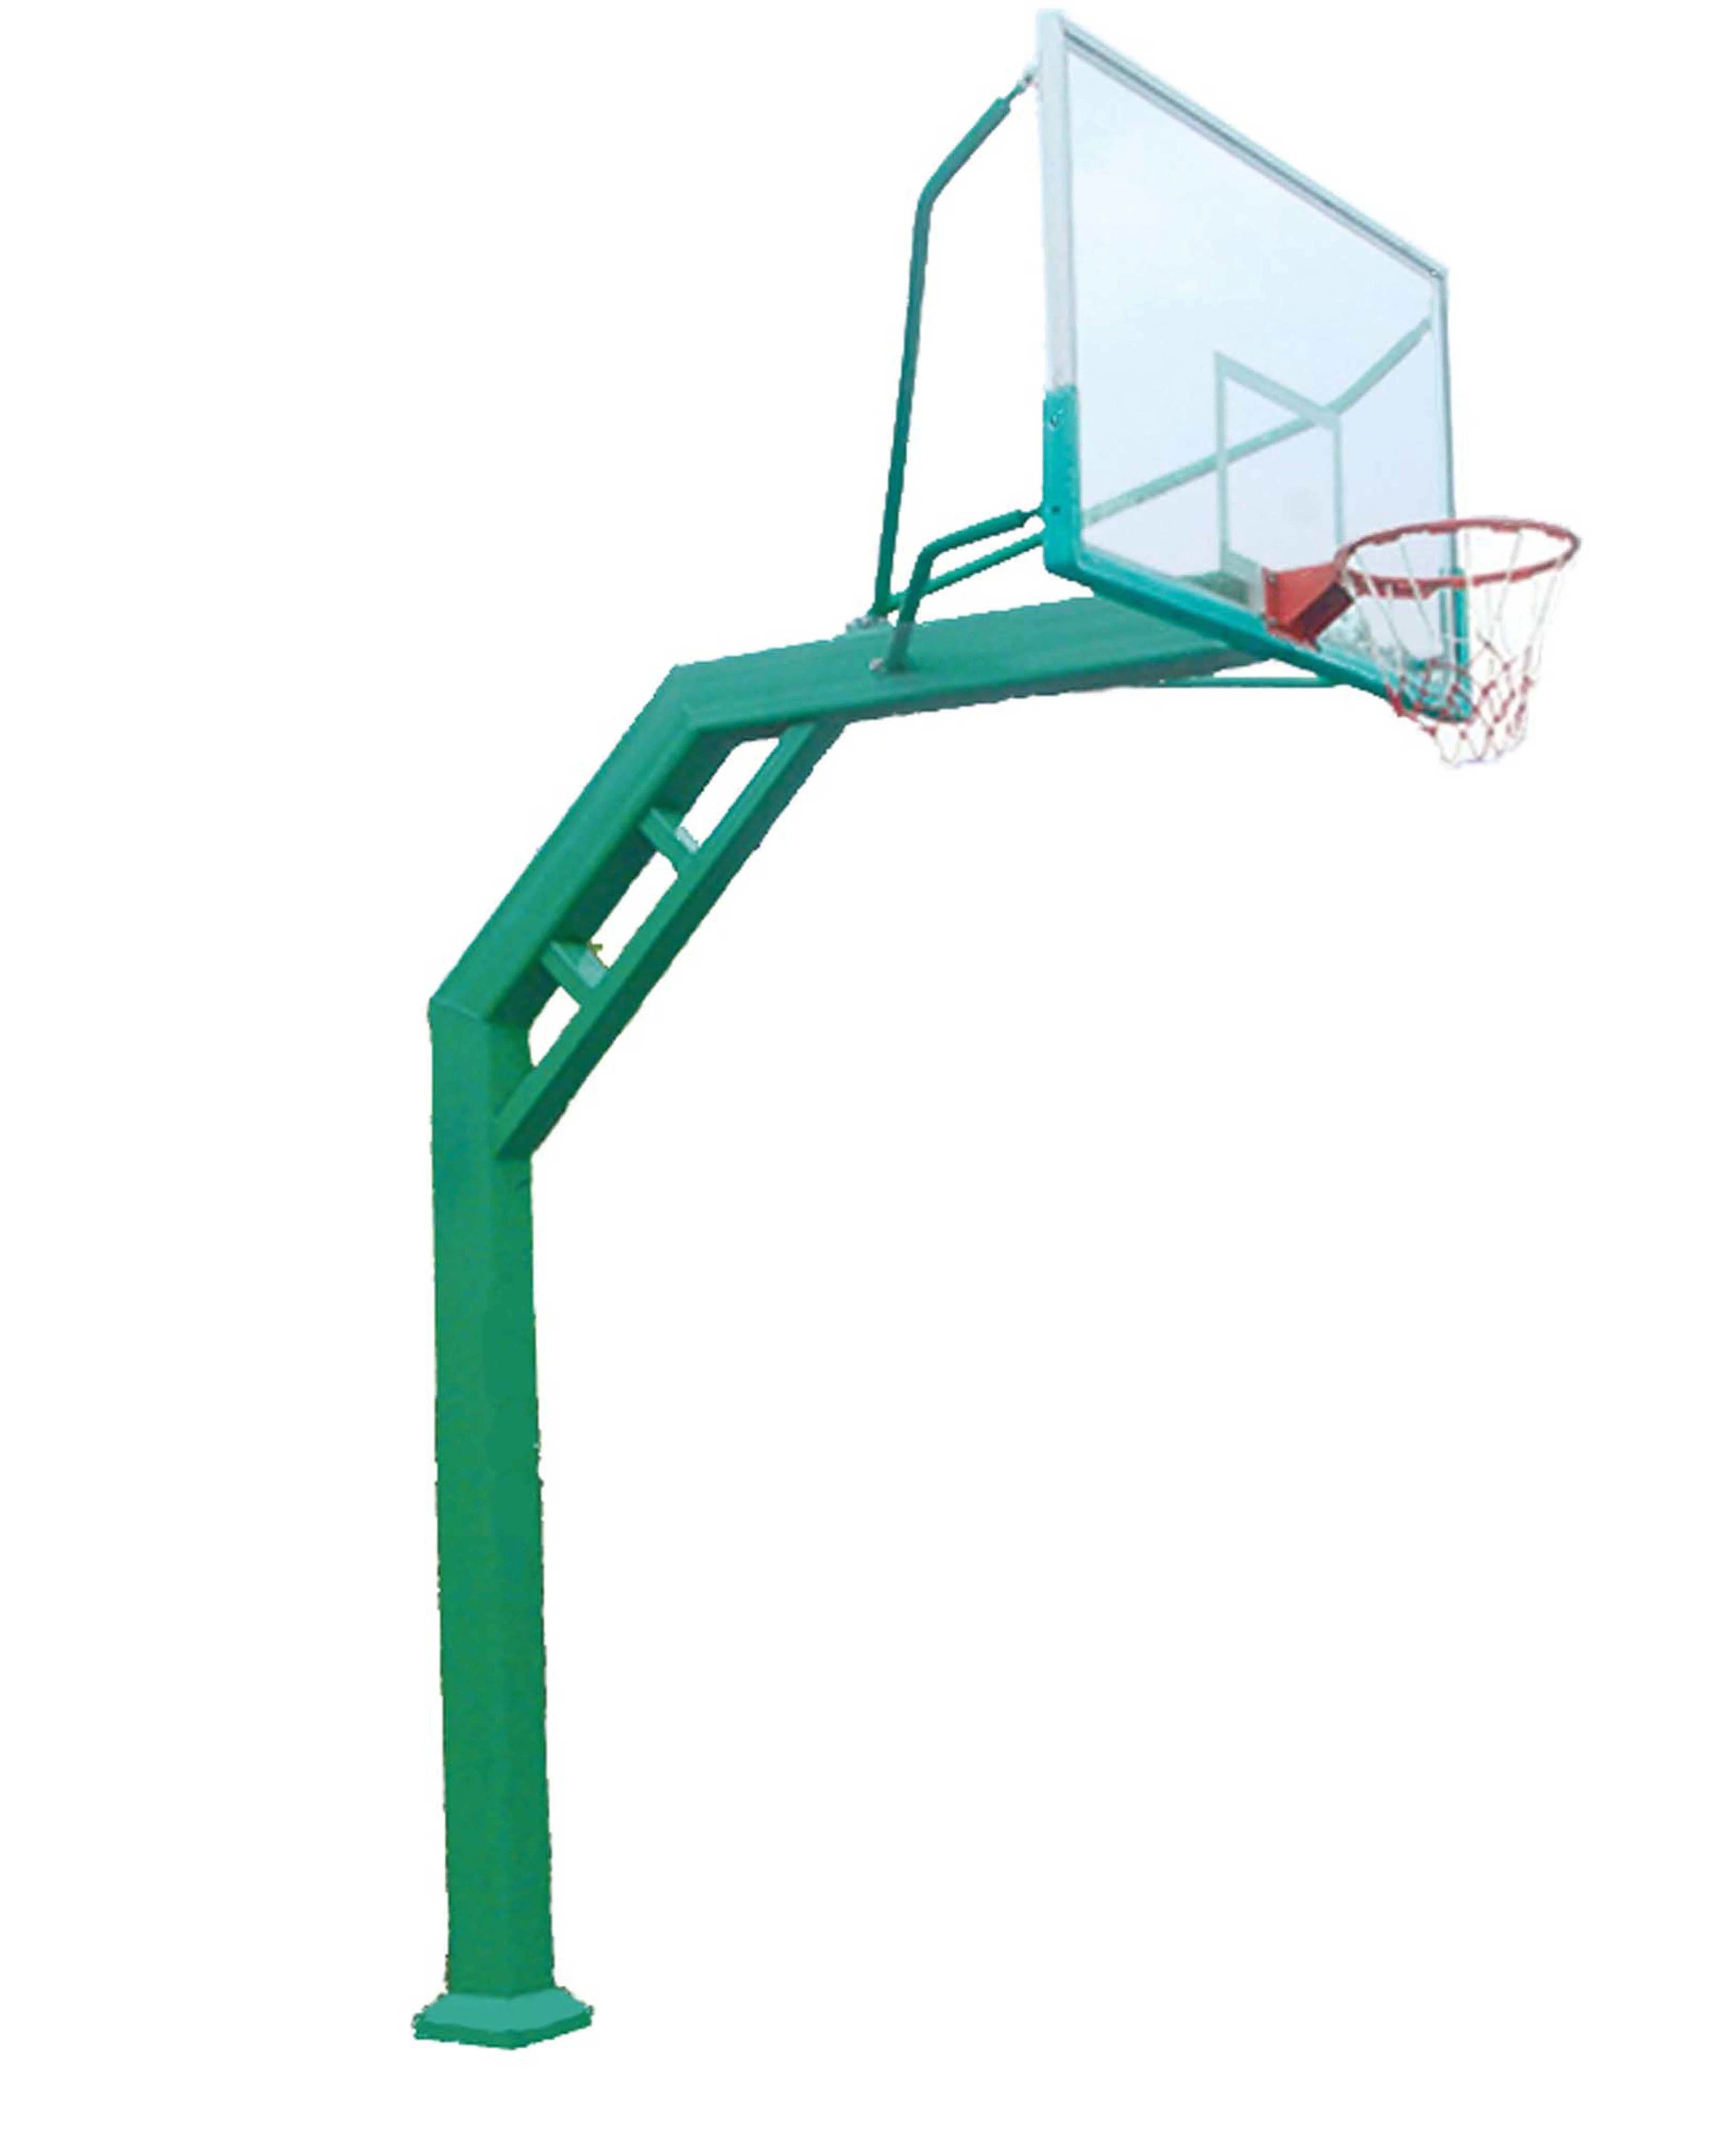 Großhandel in Ground Square Post Basketball Hoop Ziel Backstop-System Standfuß Standard mit gehärteter Glasrückwand